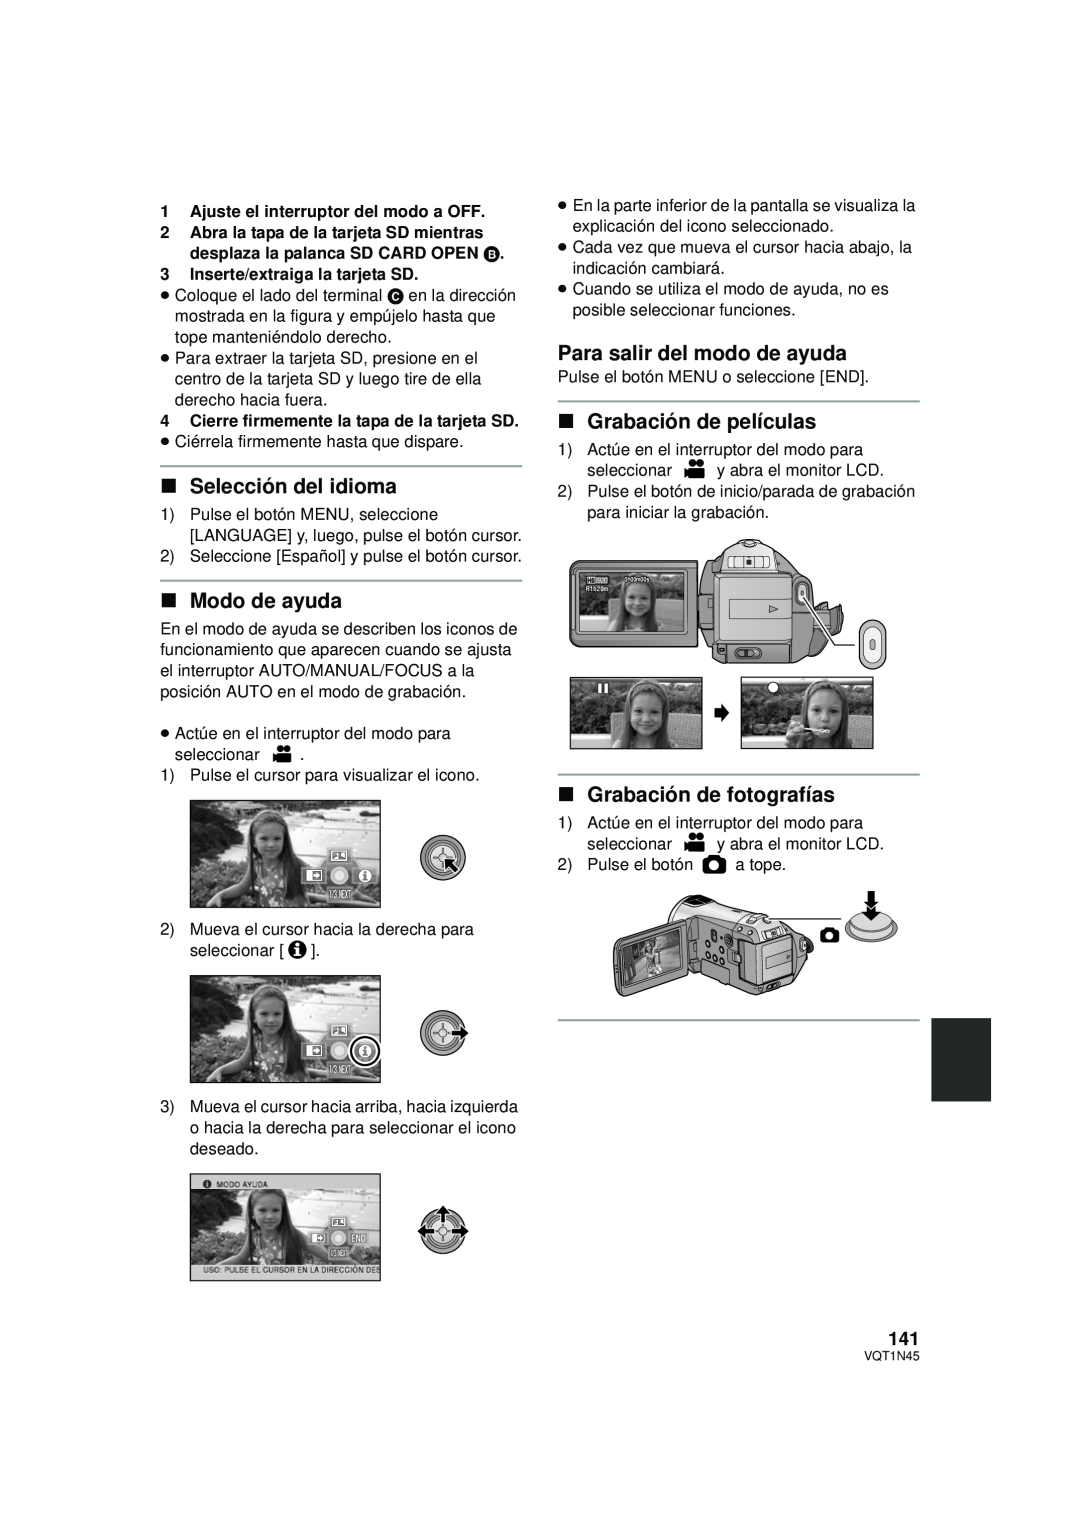 Panasonic HDC-SD9PC manual ∫Selección del idioma, ∫Modo de ayuda, Para salir del modo de ayuda, ∫Grabación de películas 